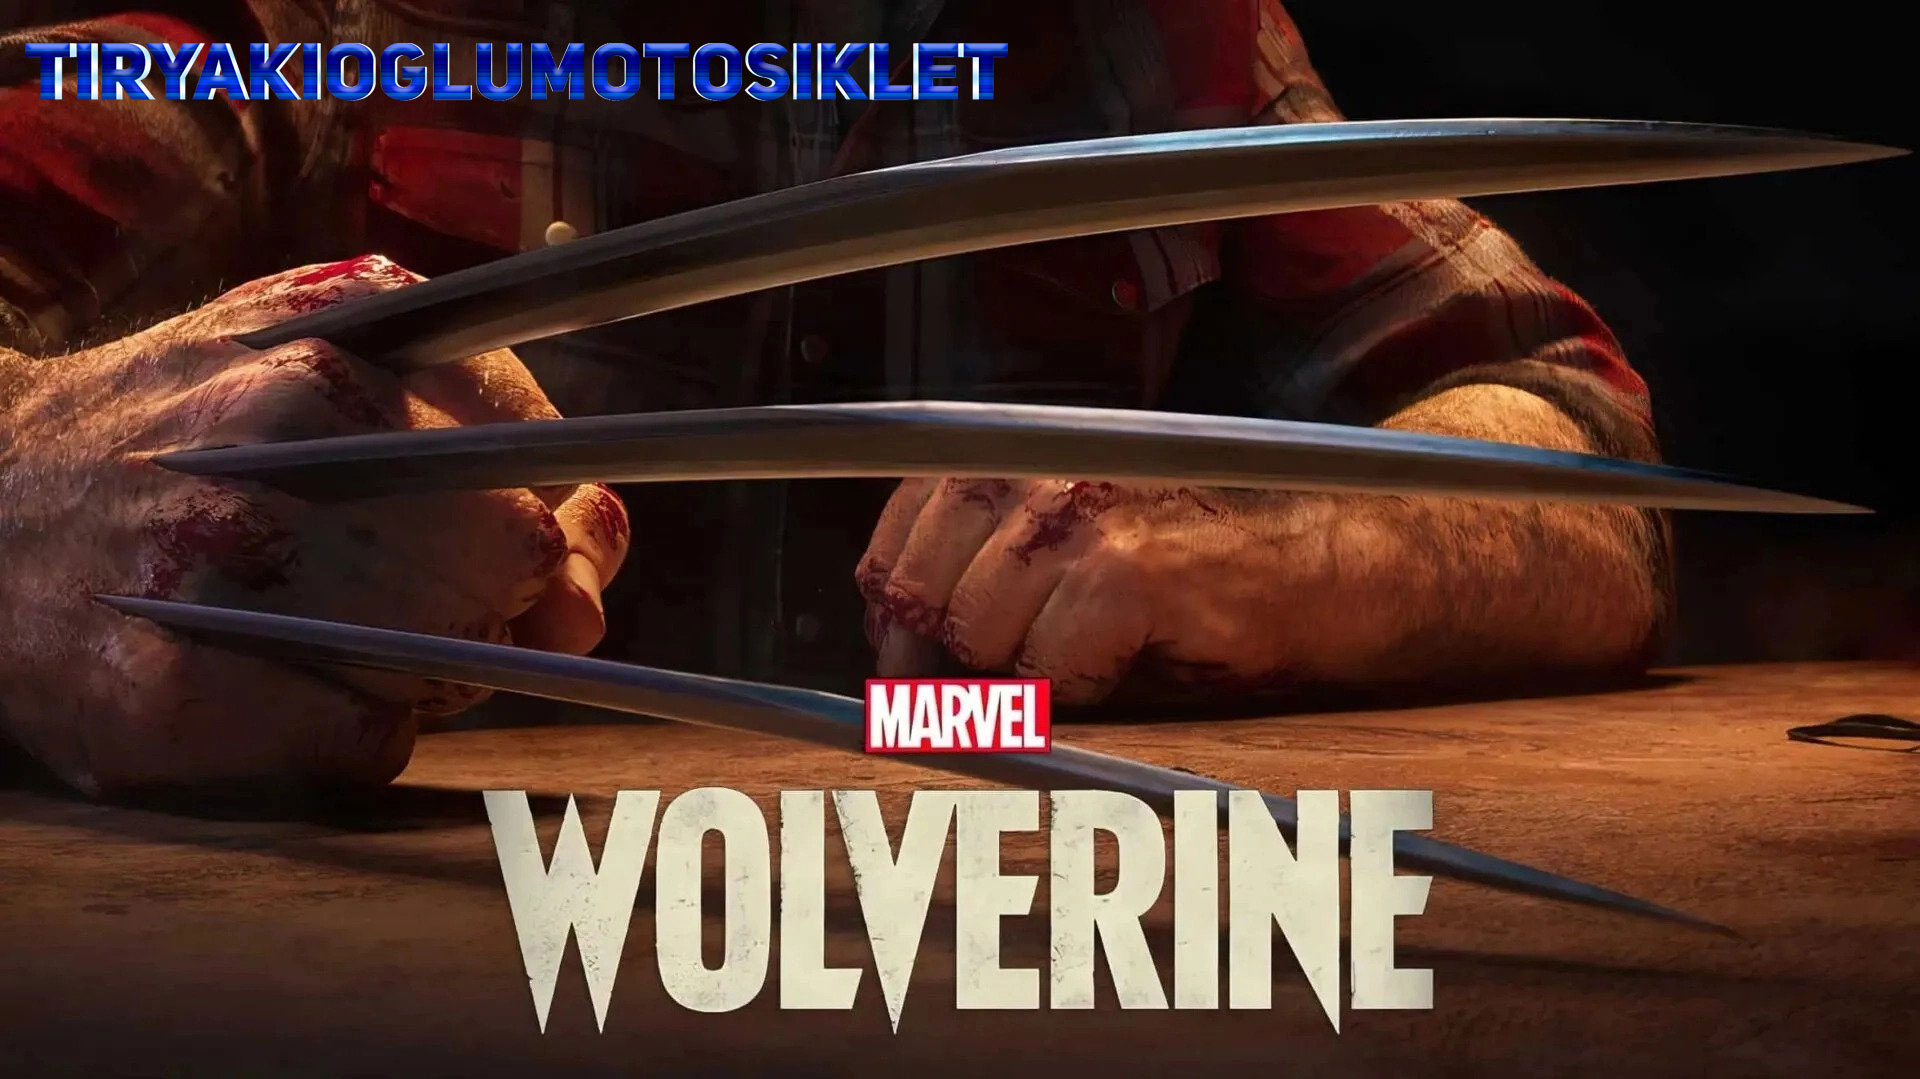 Bocoran Hacker, Insomniac Games: Game Wolverine berjalan sesuai harapan Pencipta